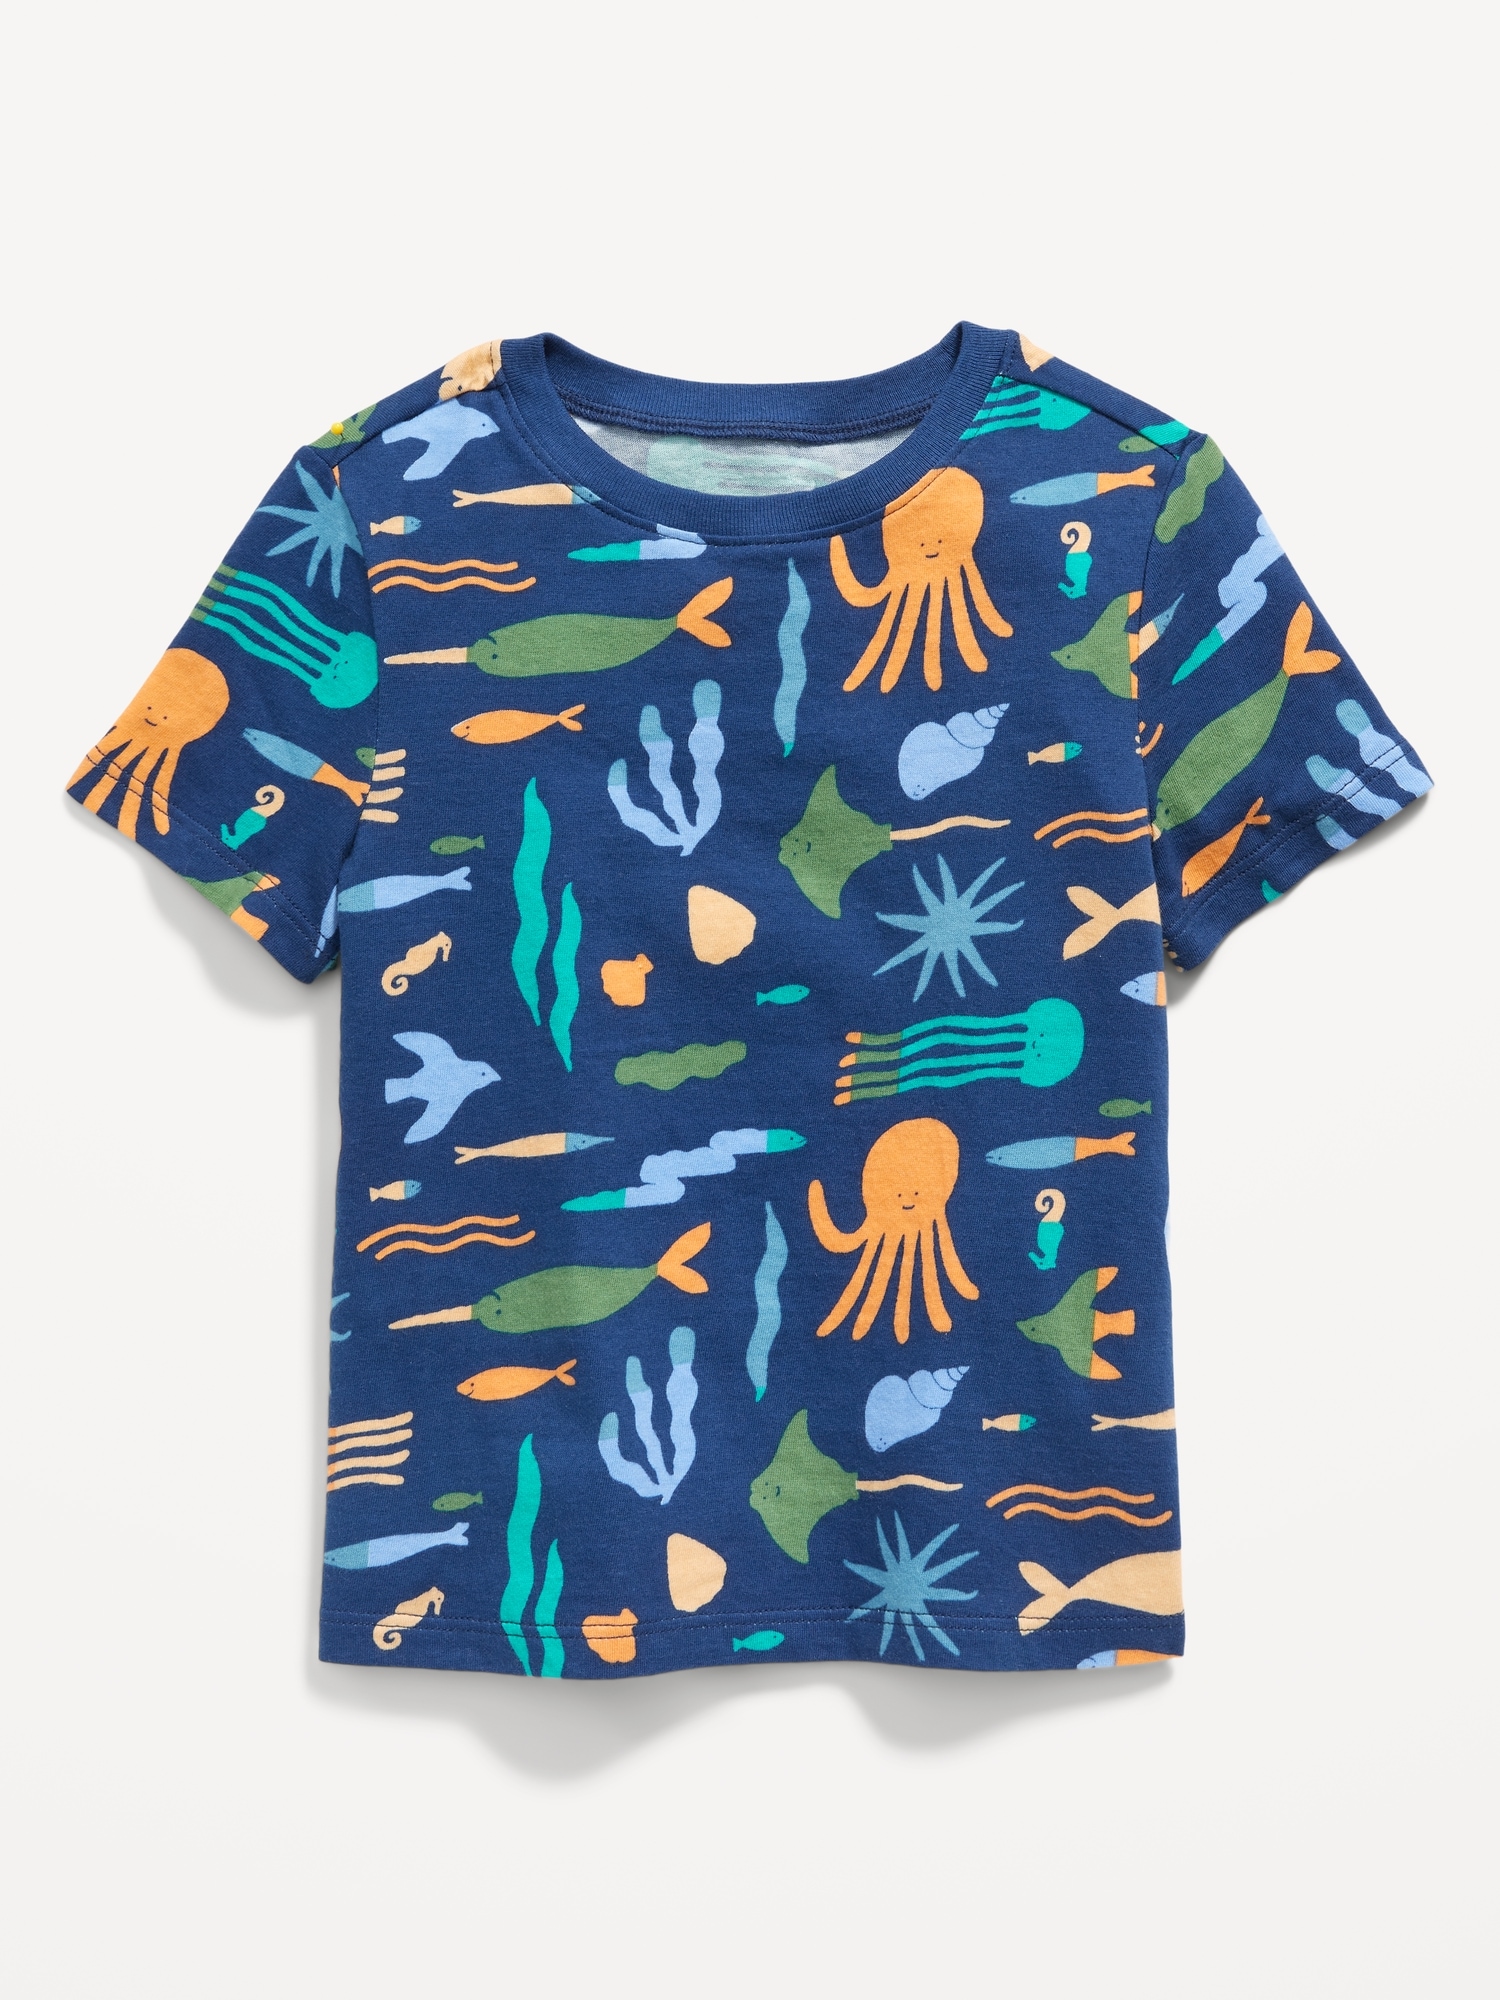 Short-Sleeve T-Shirt for Toddler Boys